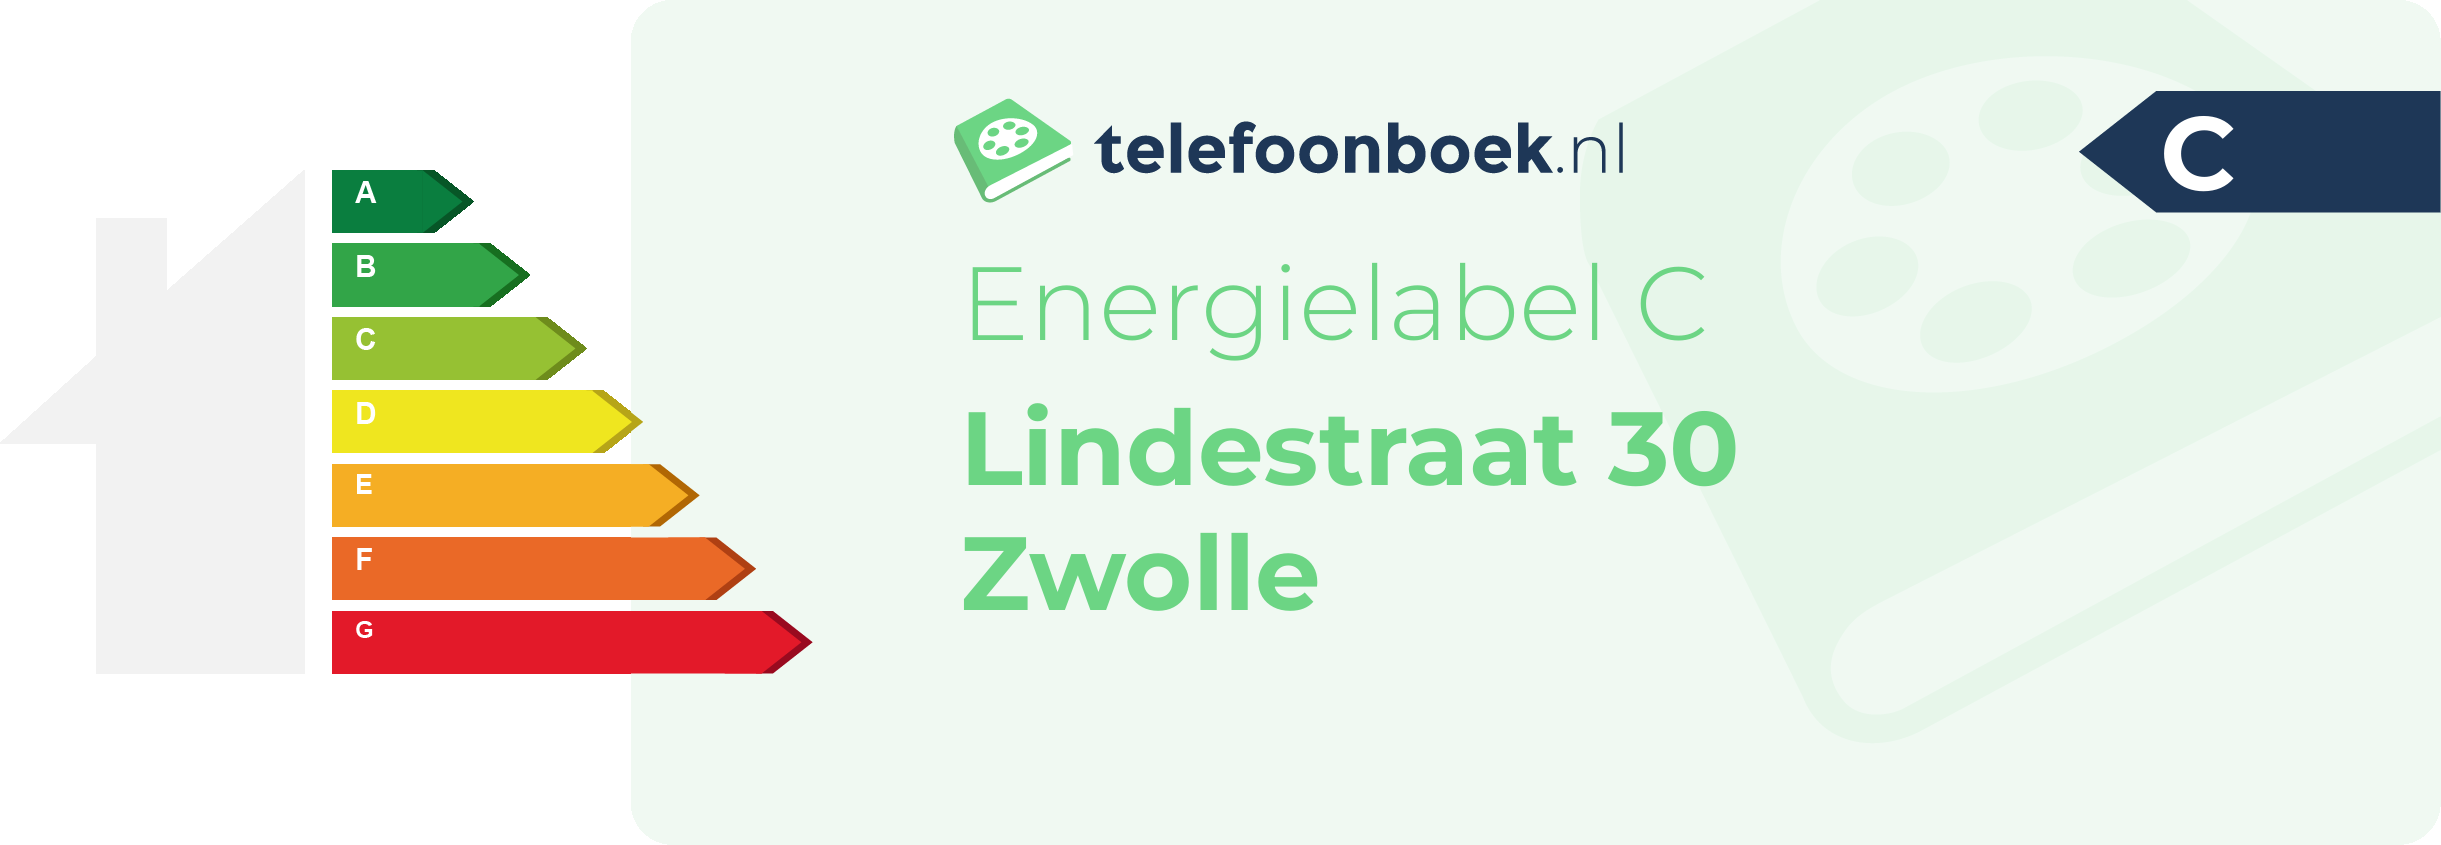 Energielabel Lindestraat 30 Zwolle